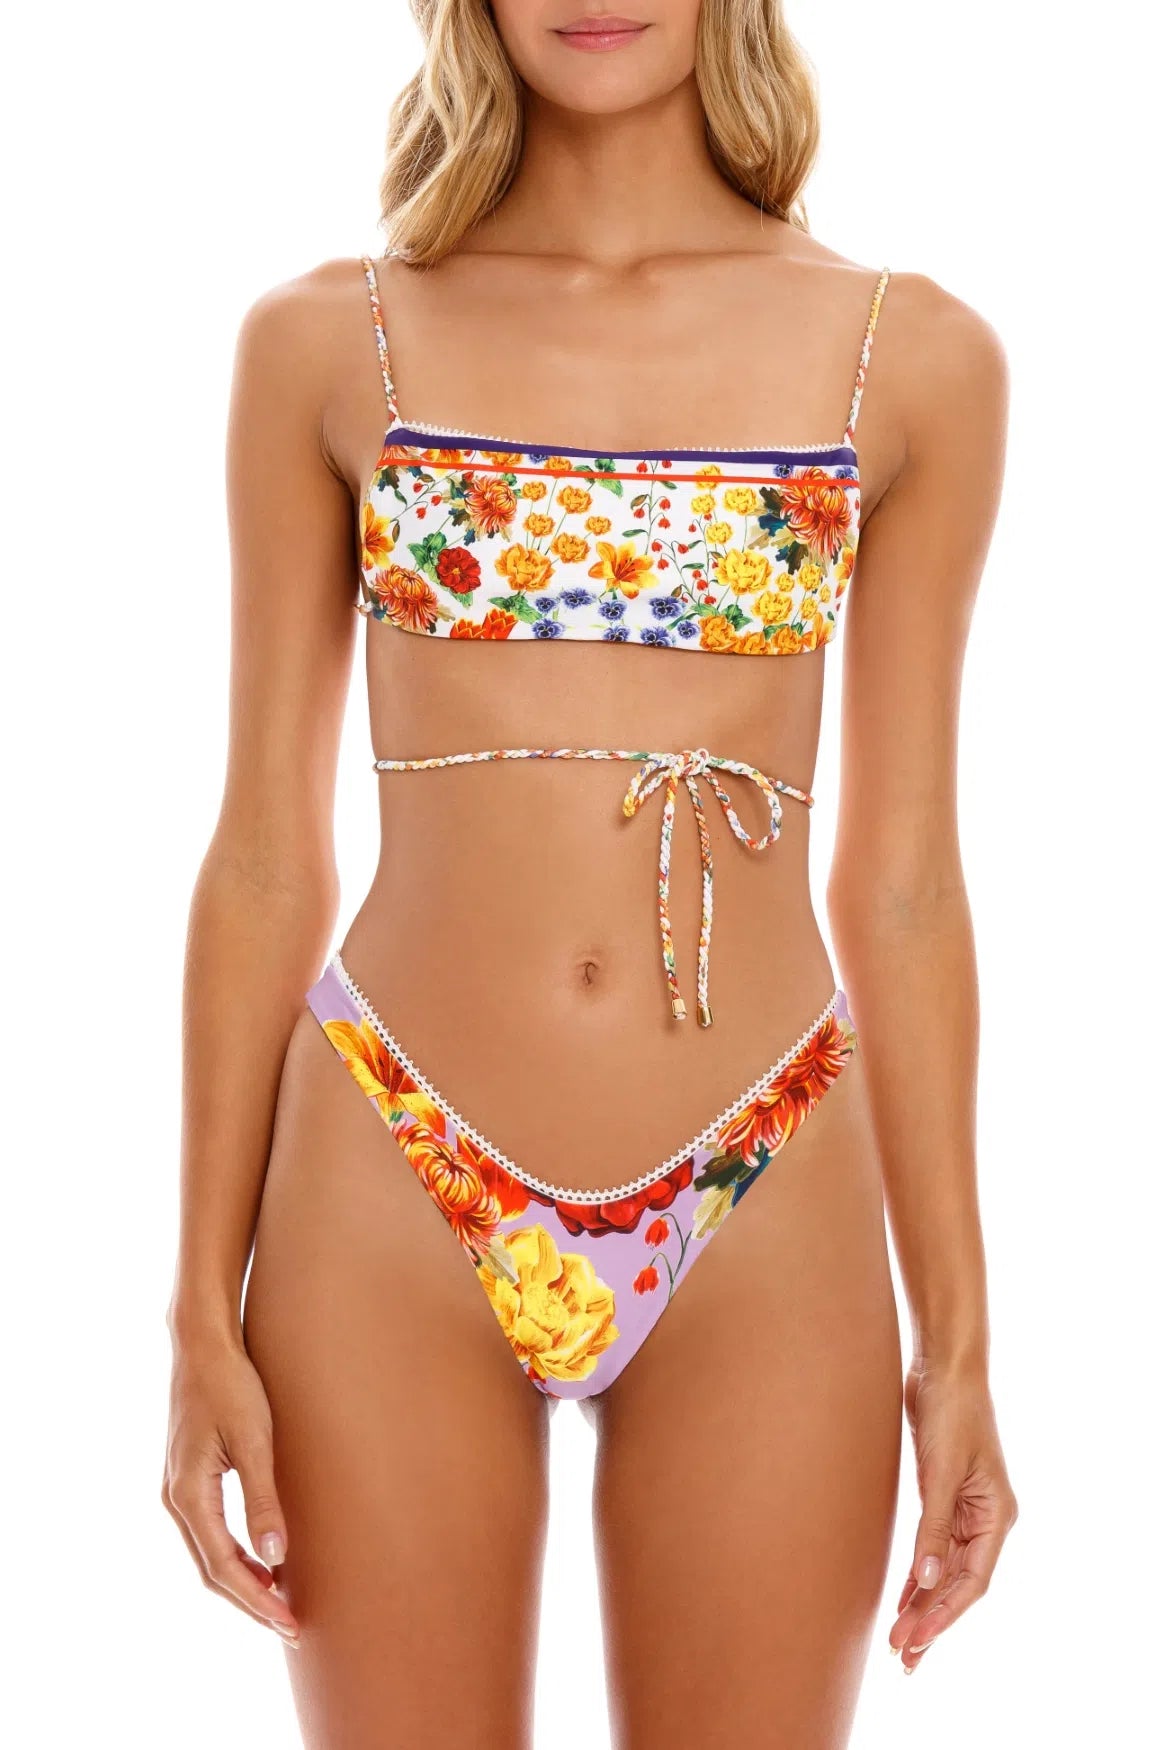 
                  
                    Bright Floral Print Reversible Bikini Top
                  
                